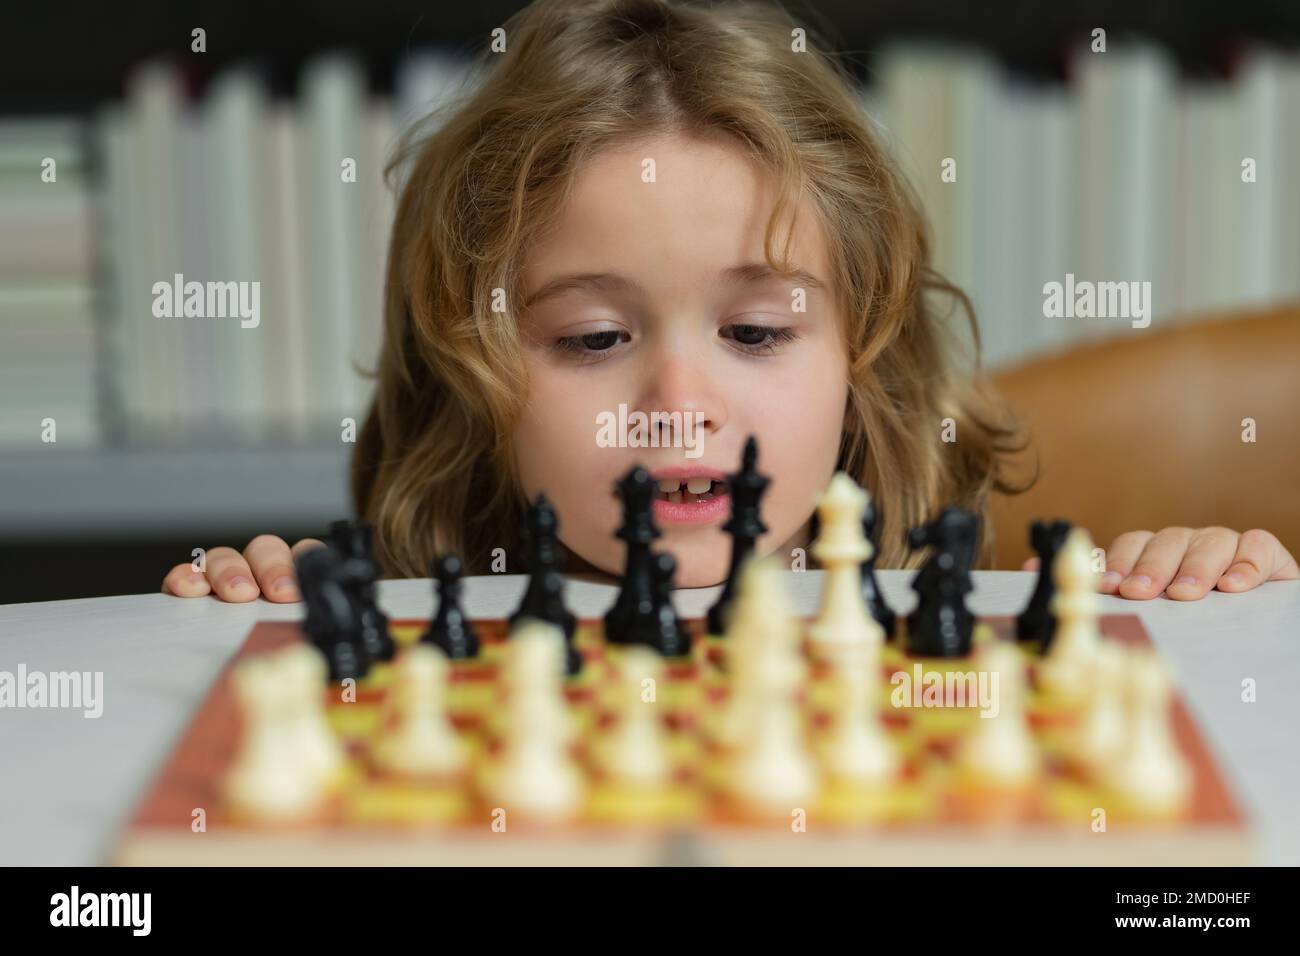 Kleines Kind spielt Schach. Kind spielt Brettspiel. Denk-Kind-Brainstorming und Idee im Schachspiel. Kinder Frühentwicklung. Ein Junge, der Schach spielt Stockfoto